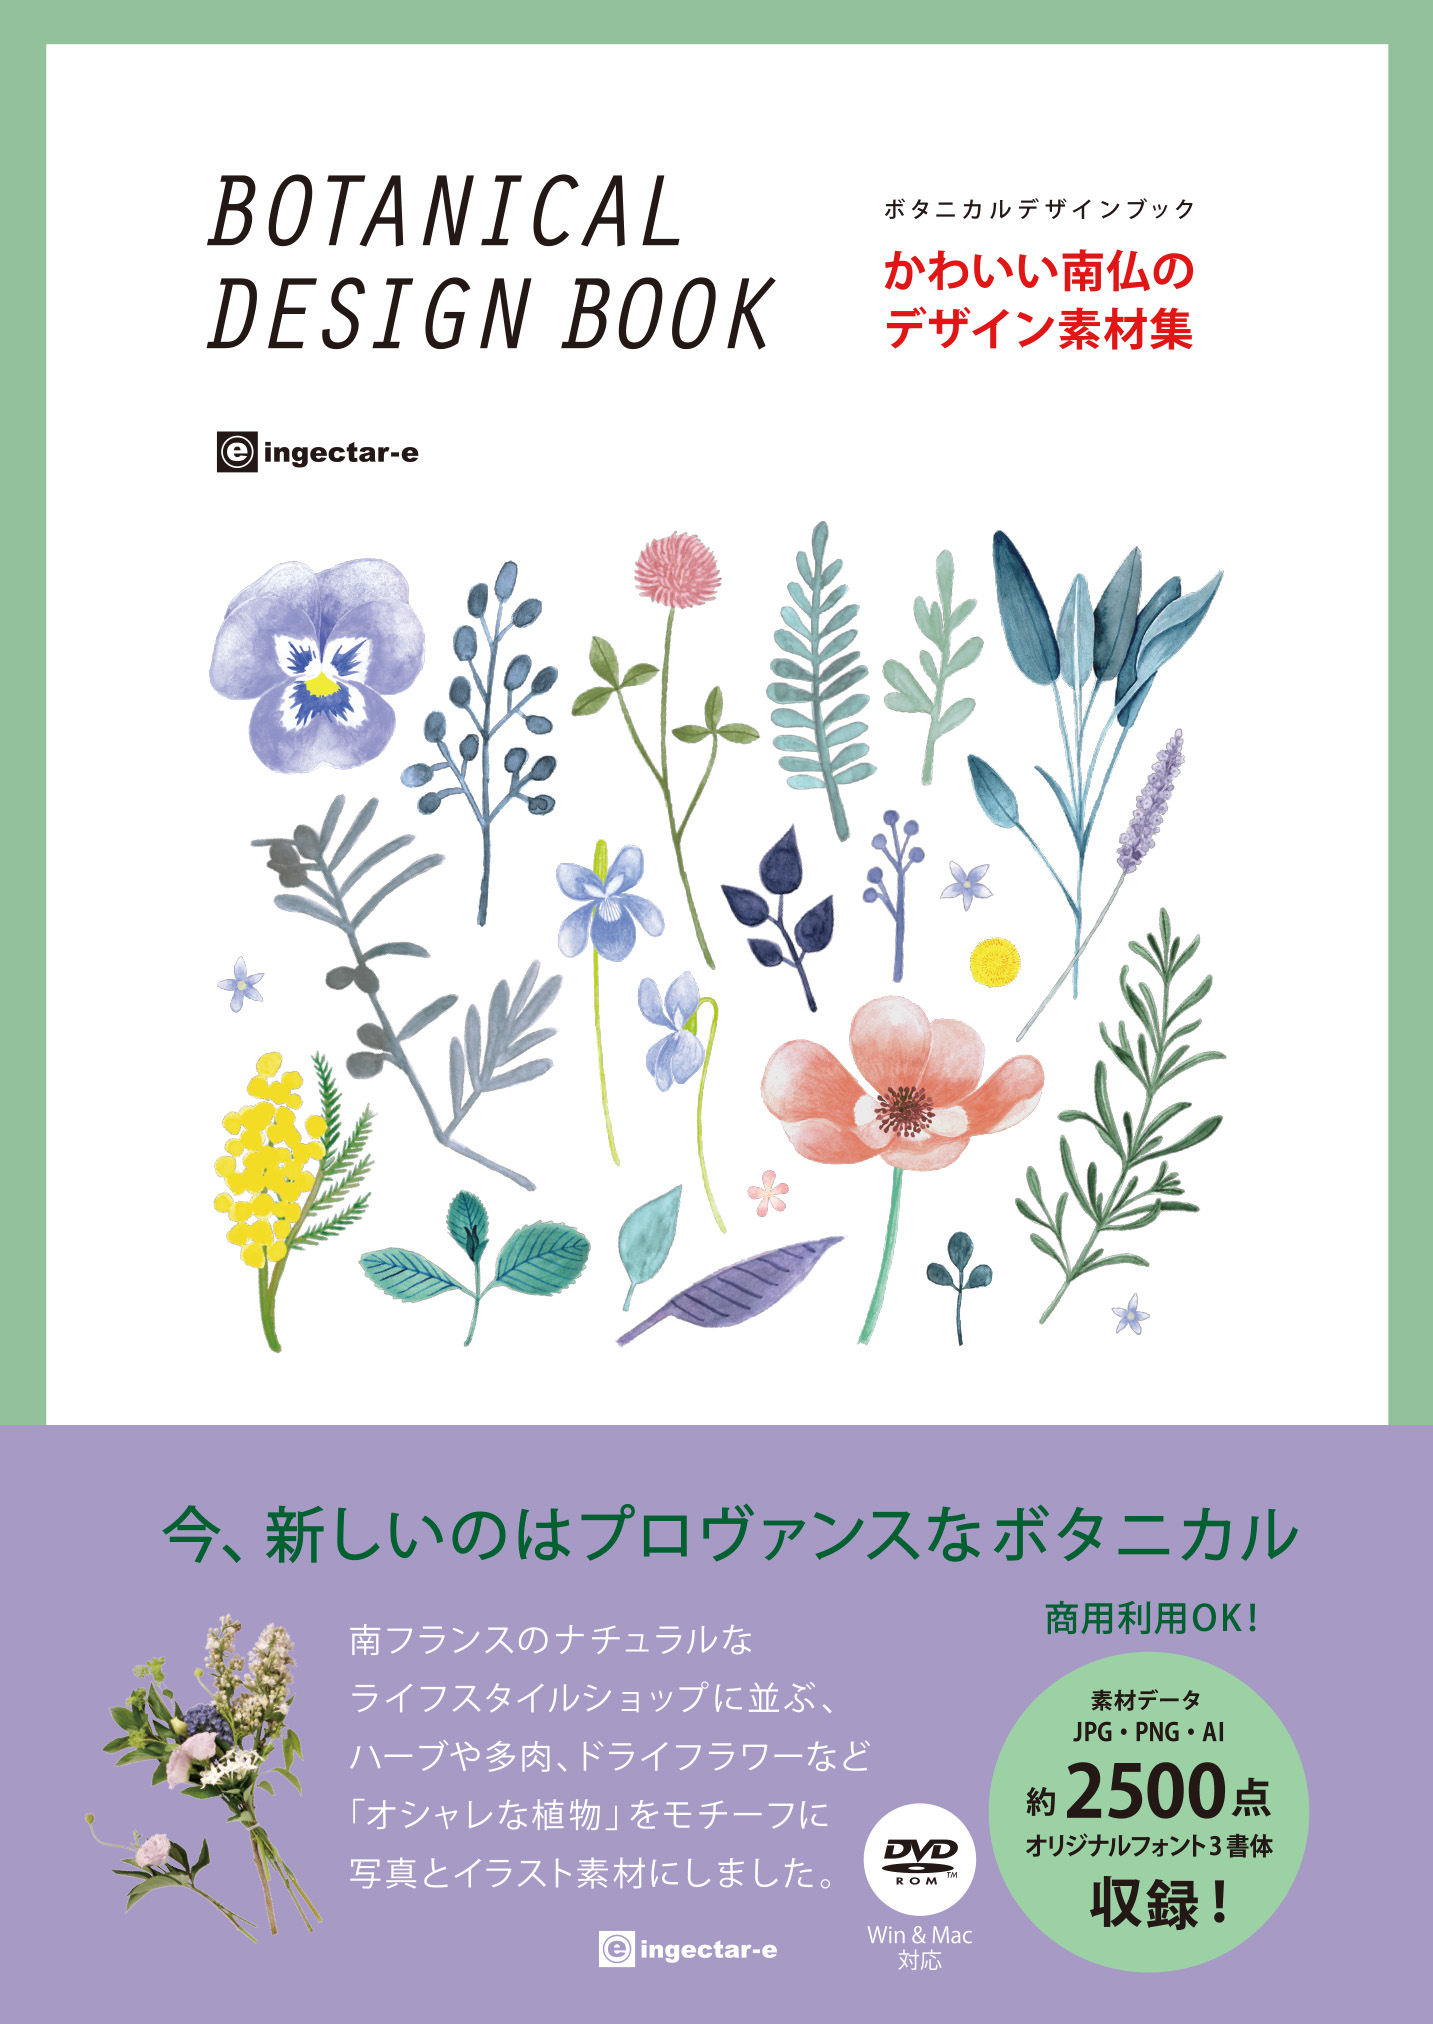 かわいい南仏のデザイン素材集ボタニカルデザインブック（ingectar-e 